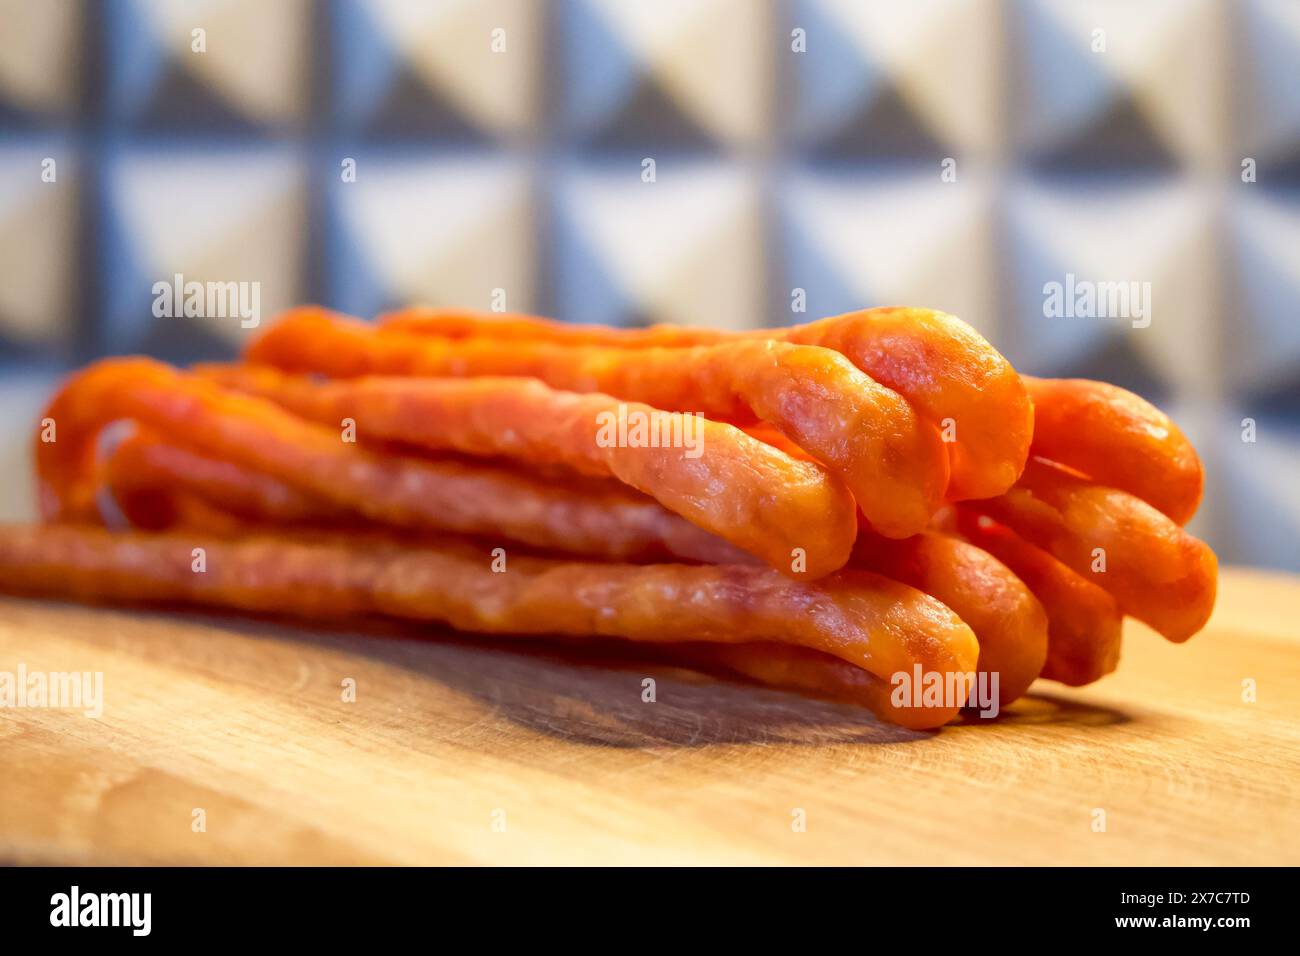 Una pila di salsicce su una tavola di legno, con sfondo piastrellato blu e bianco. L'immagine è luminosa e adatta per pubblicità di cibo o cibo Foto Stock